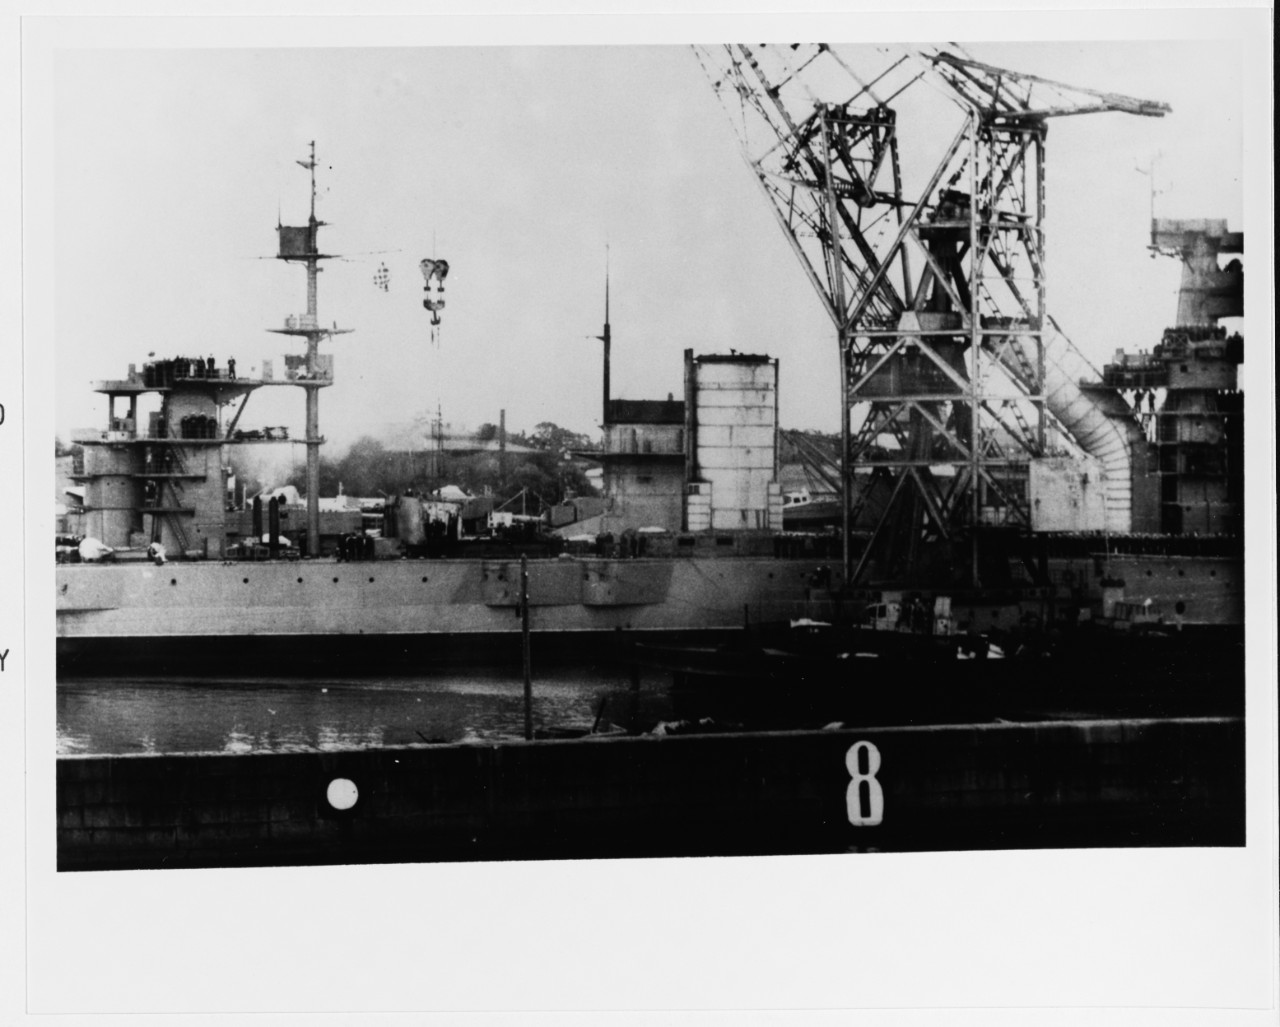 OKTYABRSKAYA REVOLUTSIYA (Soviet Battleship, 1911-1959)